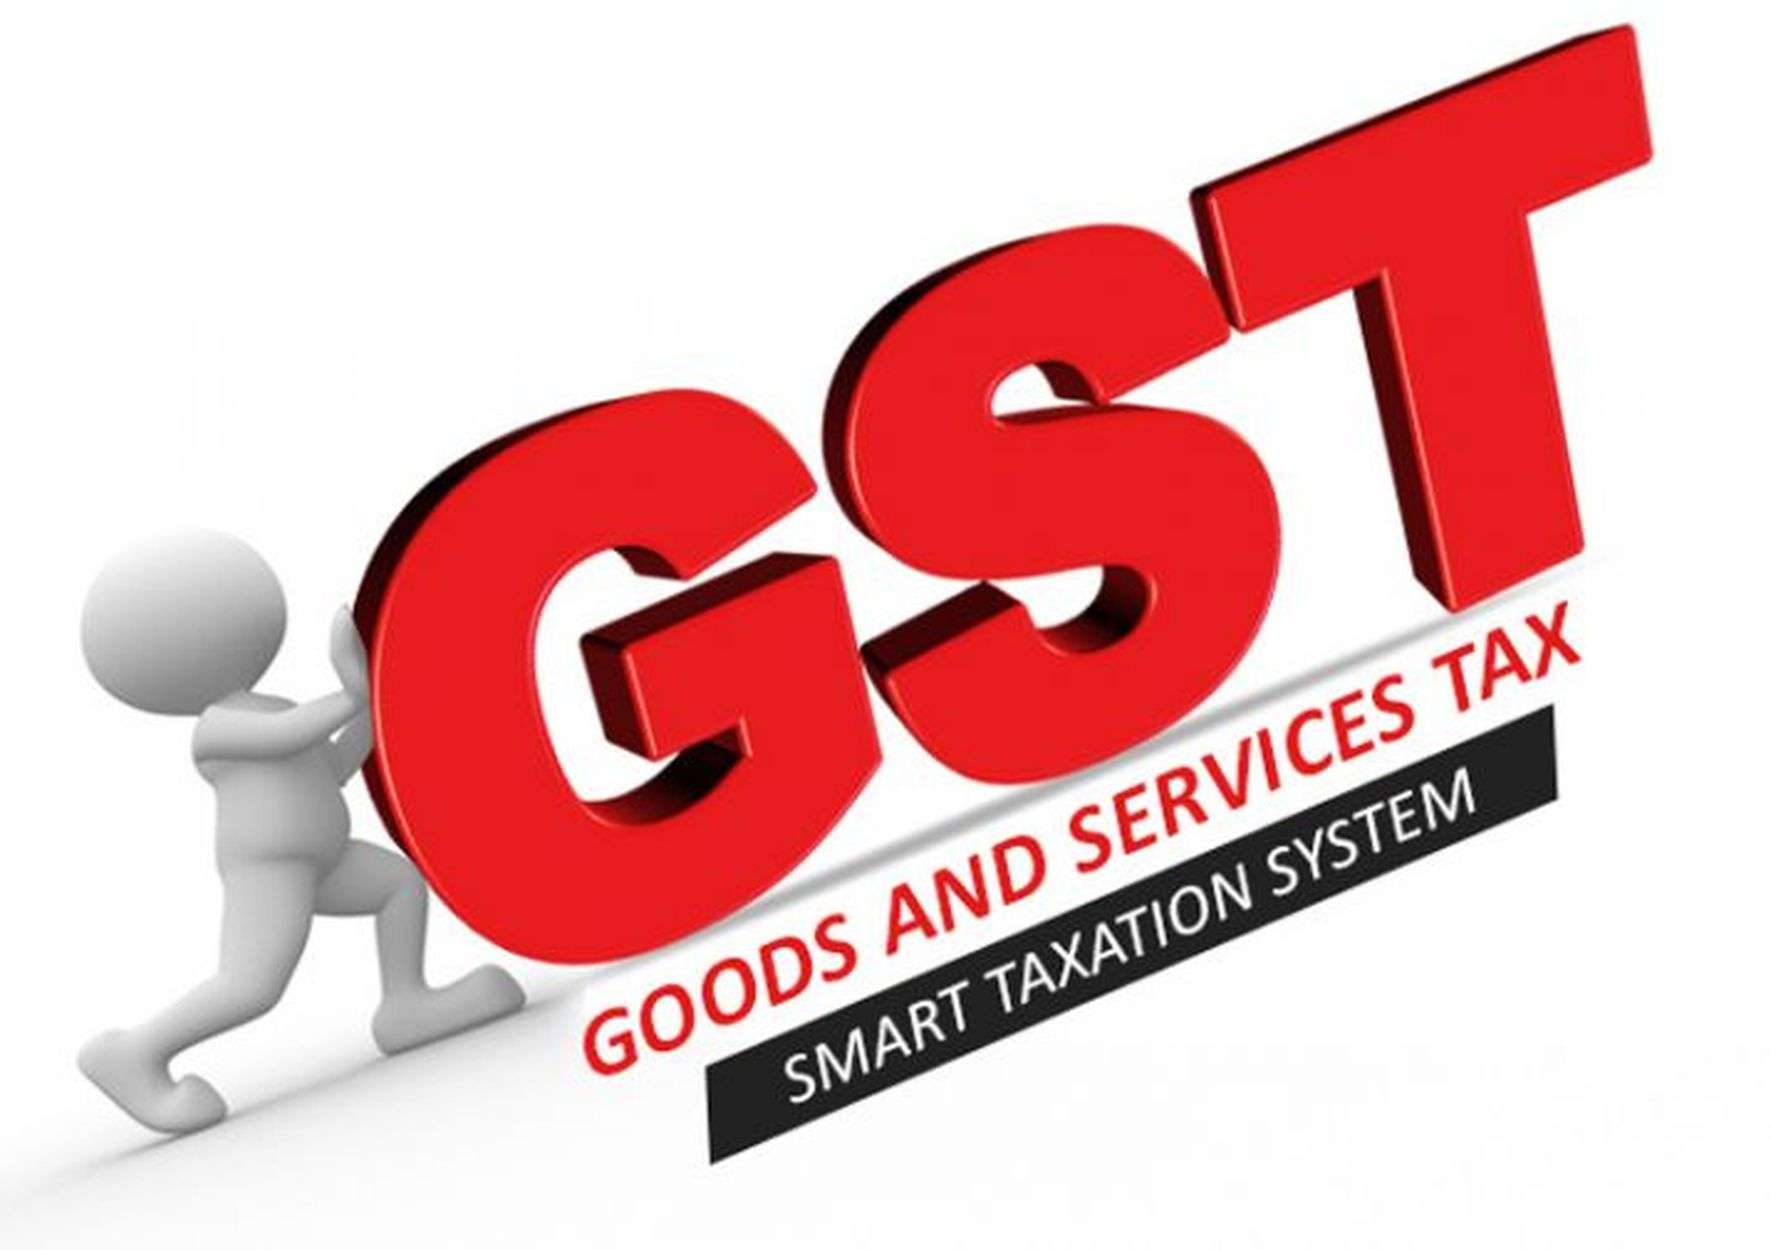 GST NEWS-वापी की कंपनी से डेढ़ करोड़ की जीएसटी चोरी पकड़ी